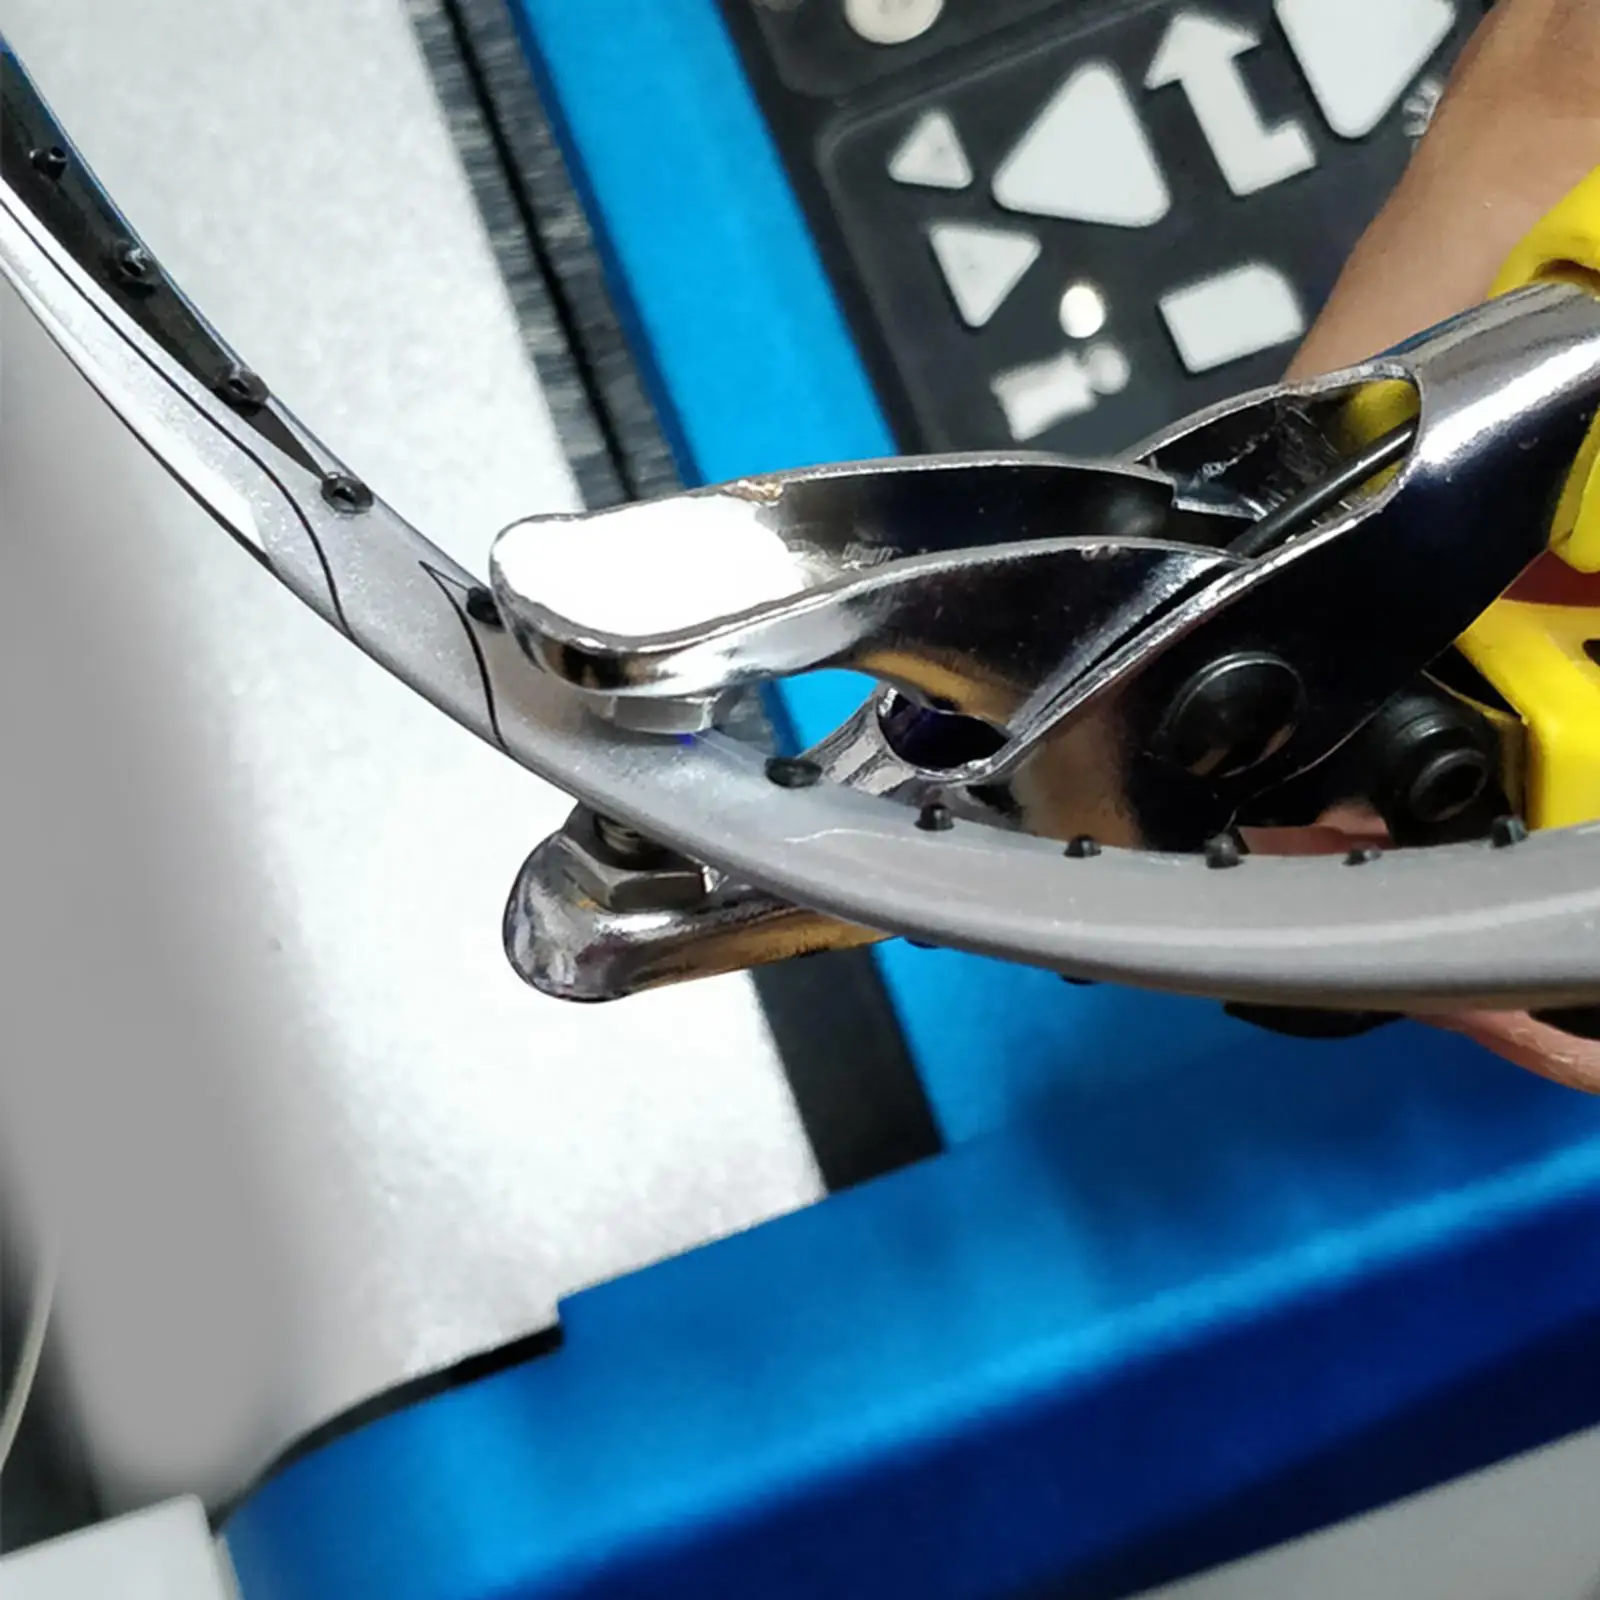 Metal Pliers for Badminton Racket Clamp Grommet Tool Racquet Racket Outdoor Threading Pincer Forceps Equipment